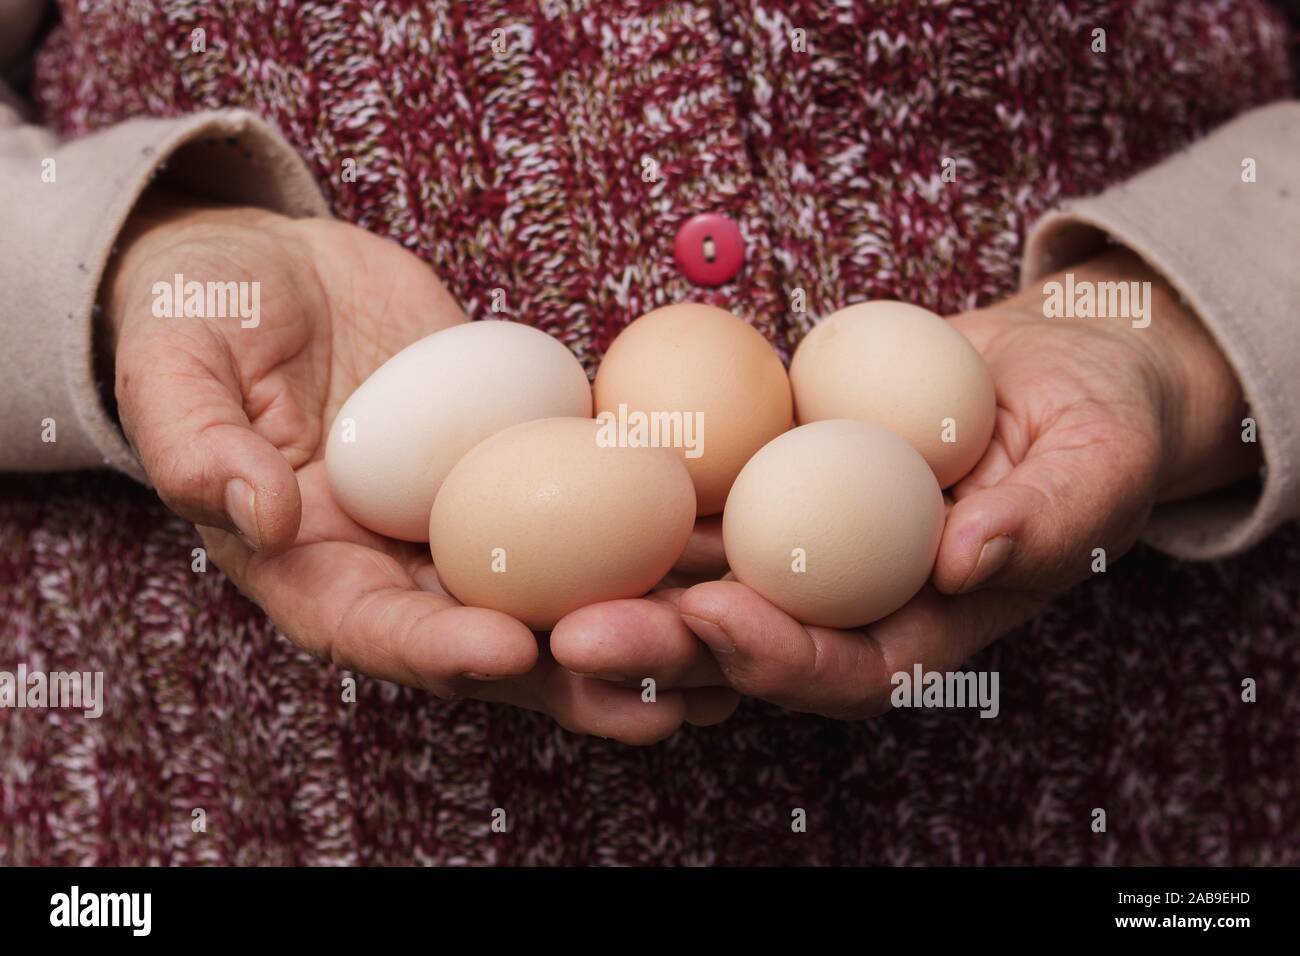 Grand-mère est titulaire d'Œufs dans les mains. Les produits naturels, biologiques, et de vie. Banque D'Images